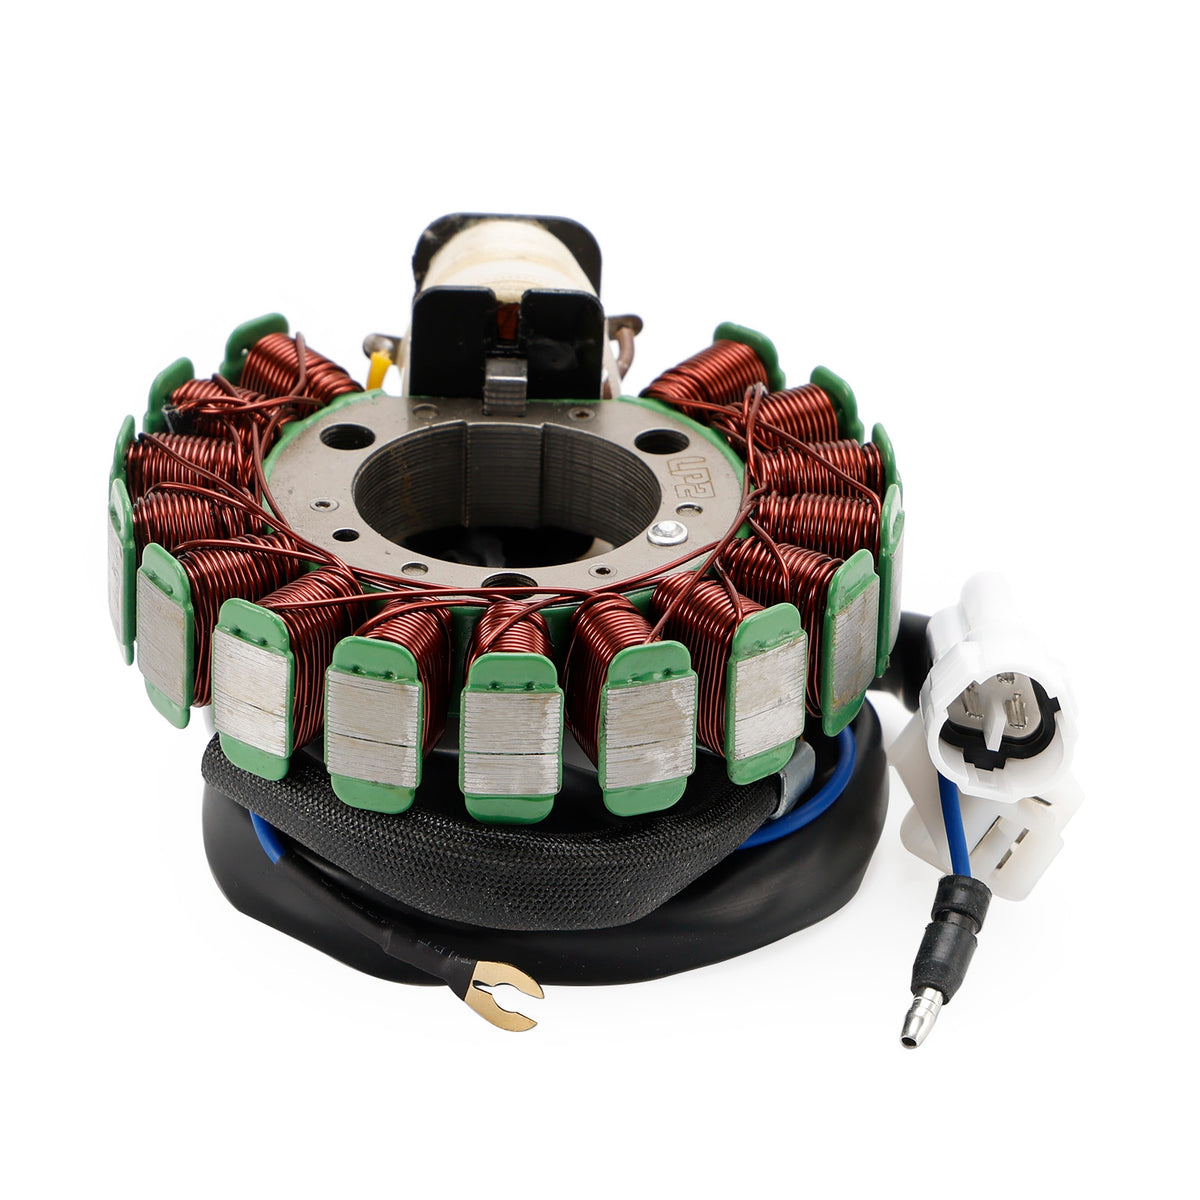 Regulator Magneto Stator Coil Gasket Kit For Yamaha TT-R 225 99-04 XT 225 01-07